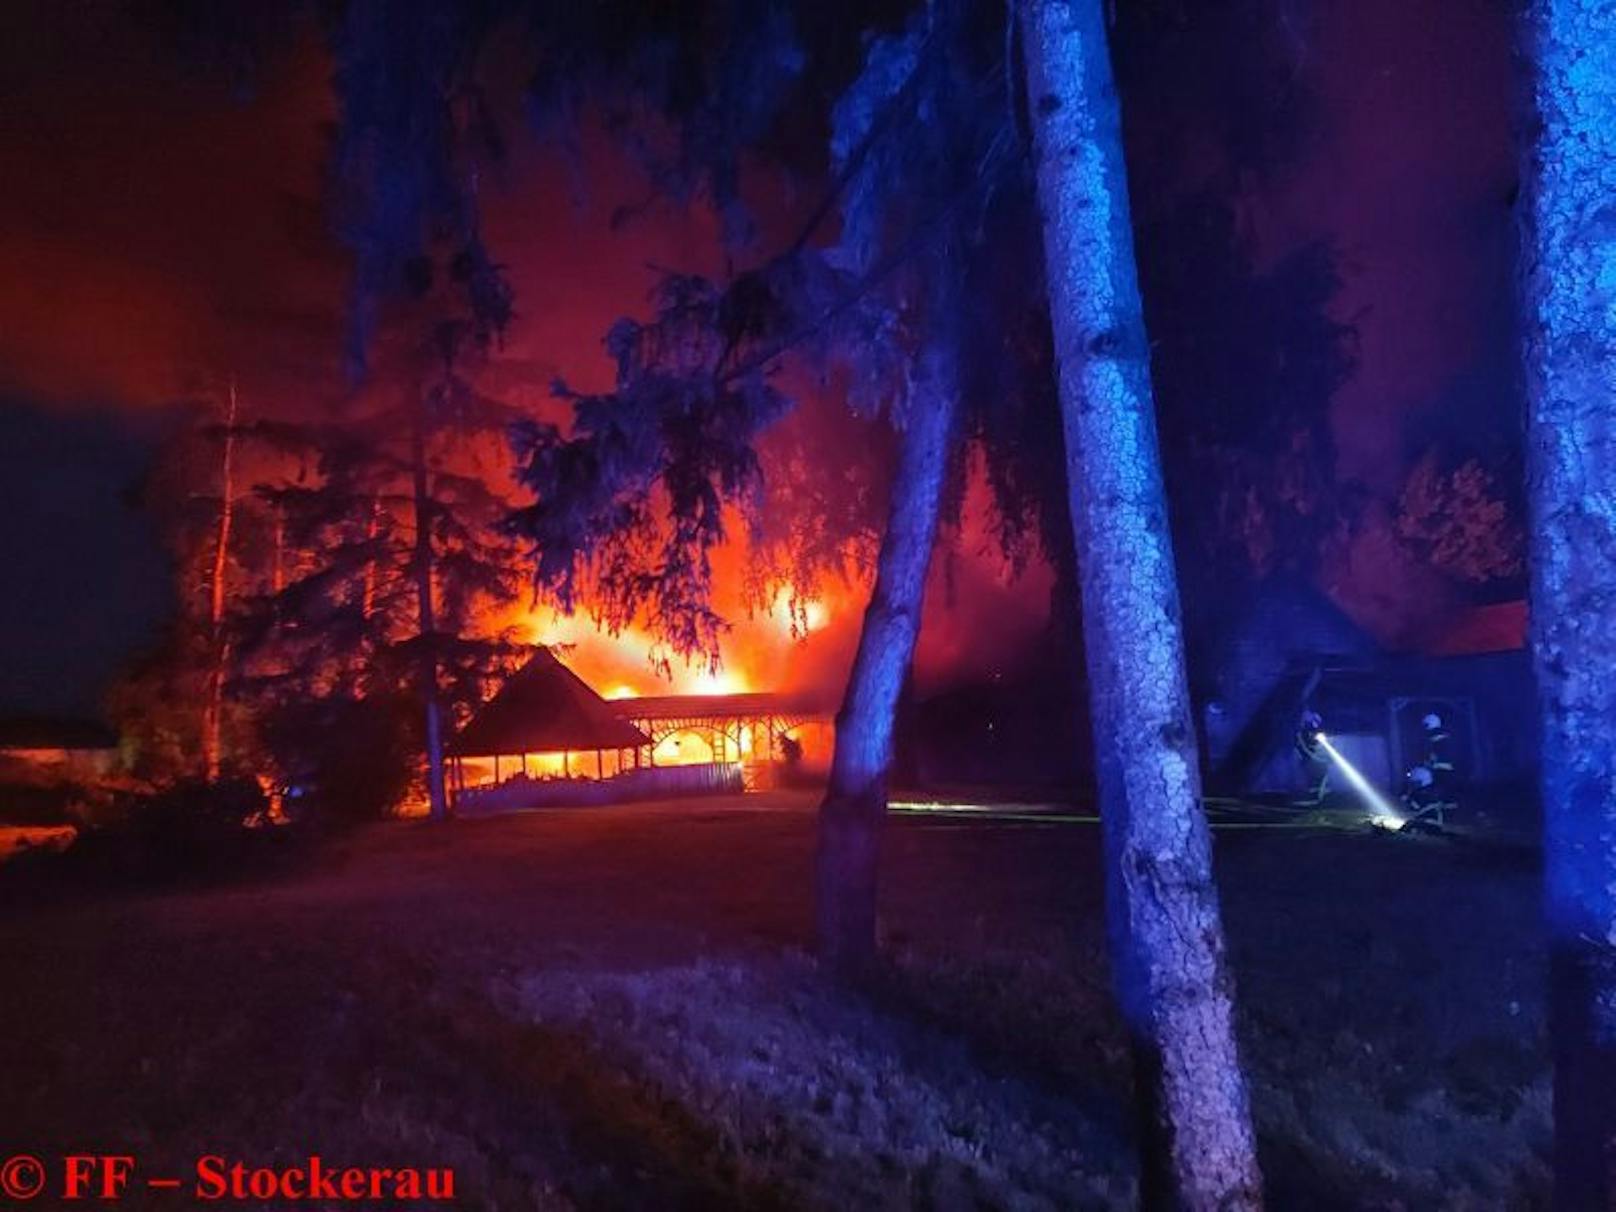 Holzhaus in Flammen! Stundenlanger Kampf für Florianis